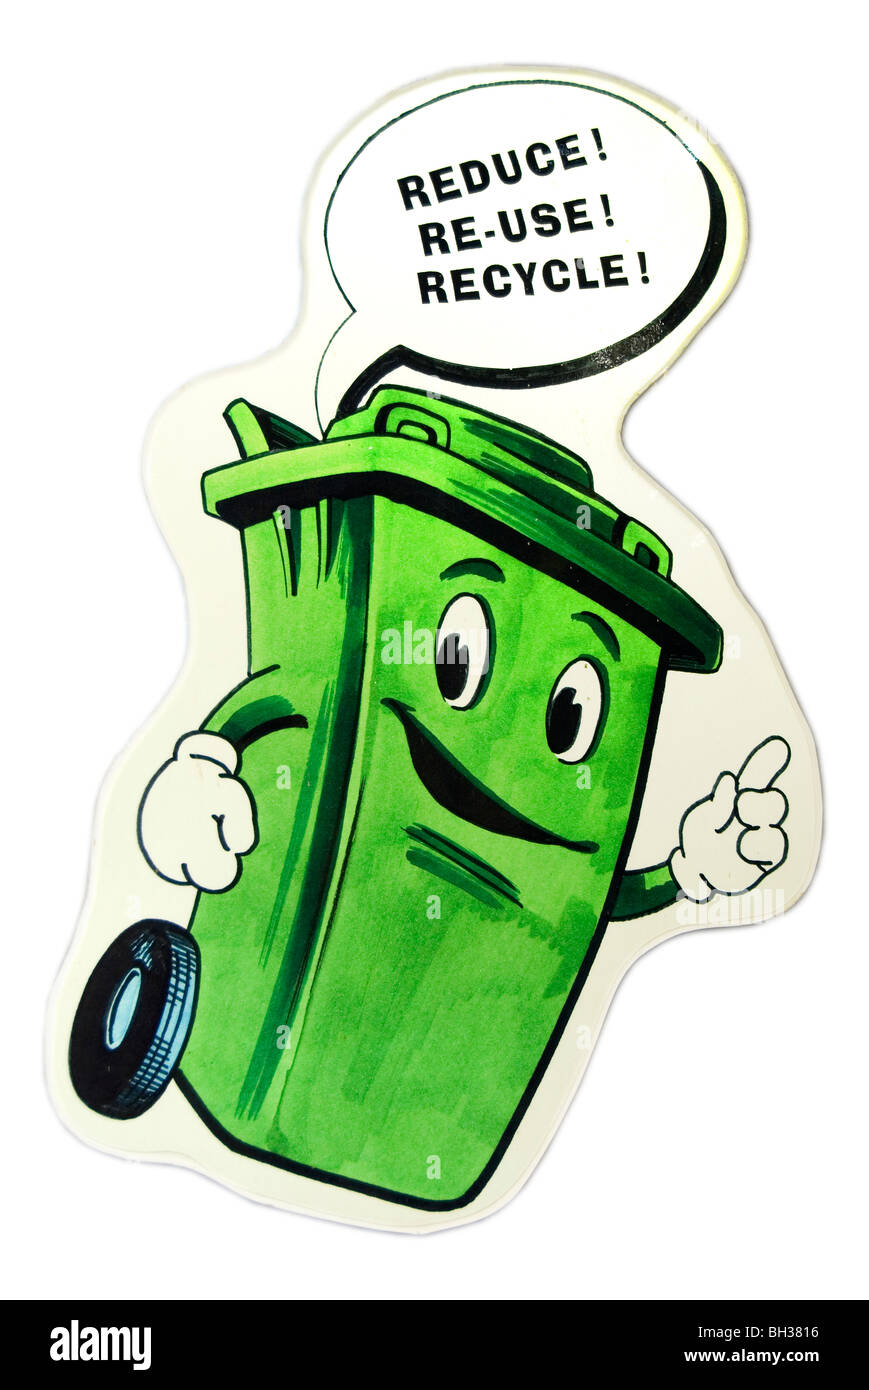 Signe de recyclage avec une poubelle, illustration, Angleterre, Royaume-Uni, Europe Banque D'Images